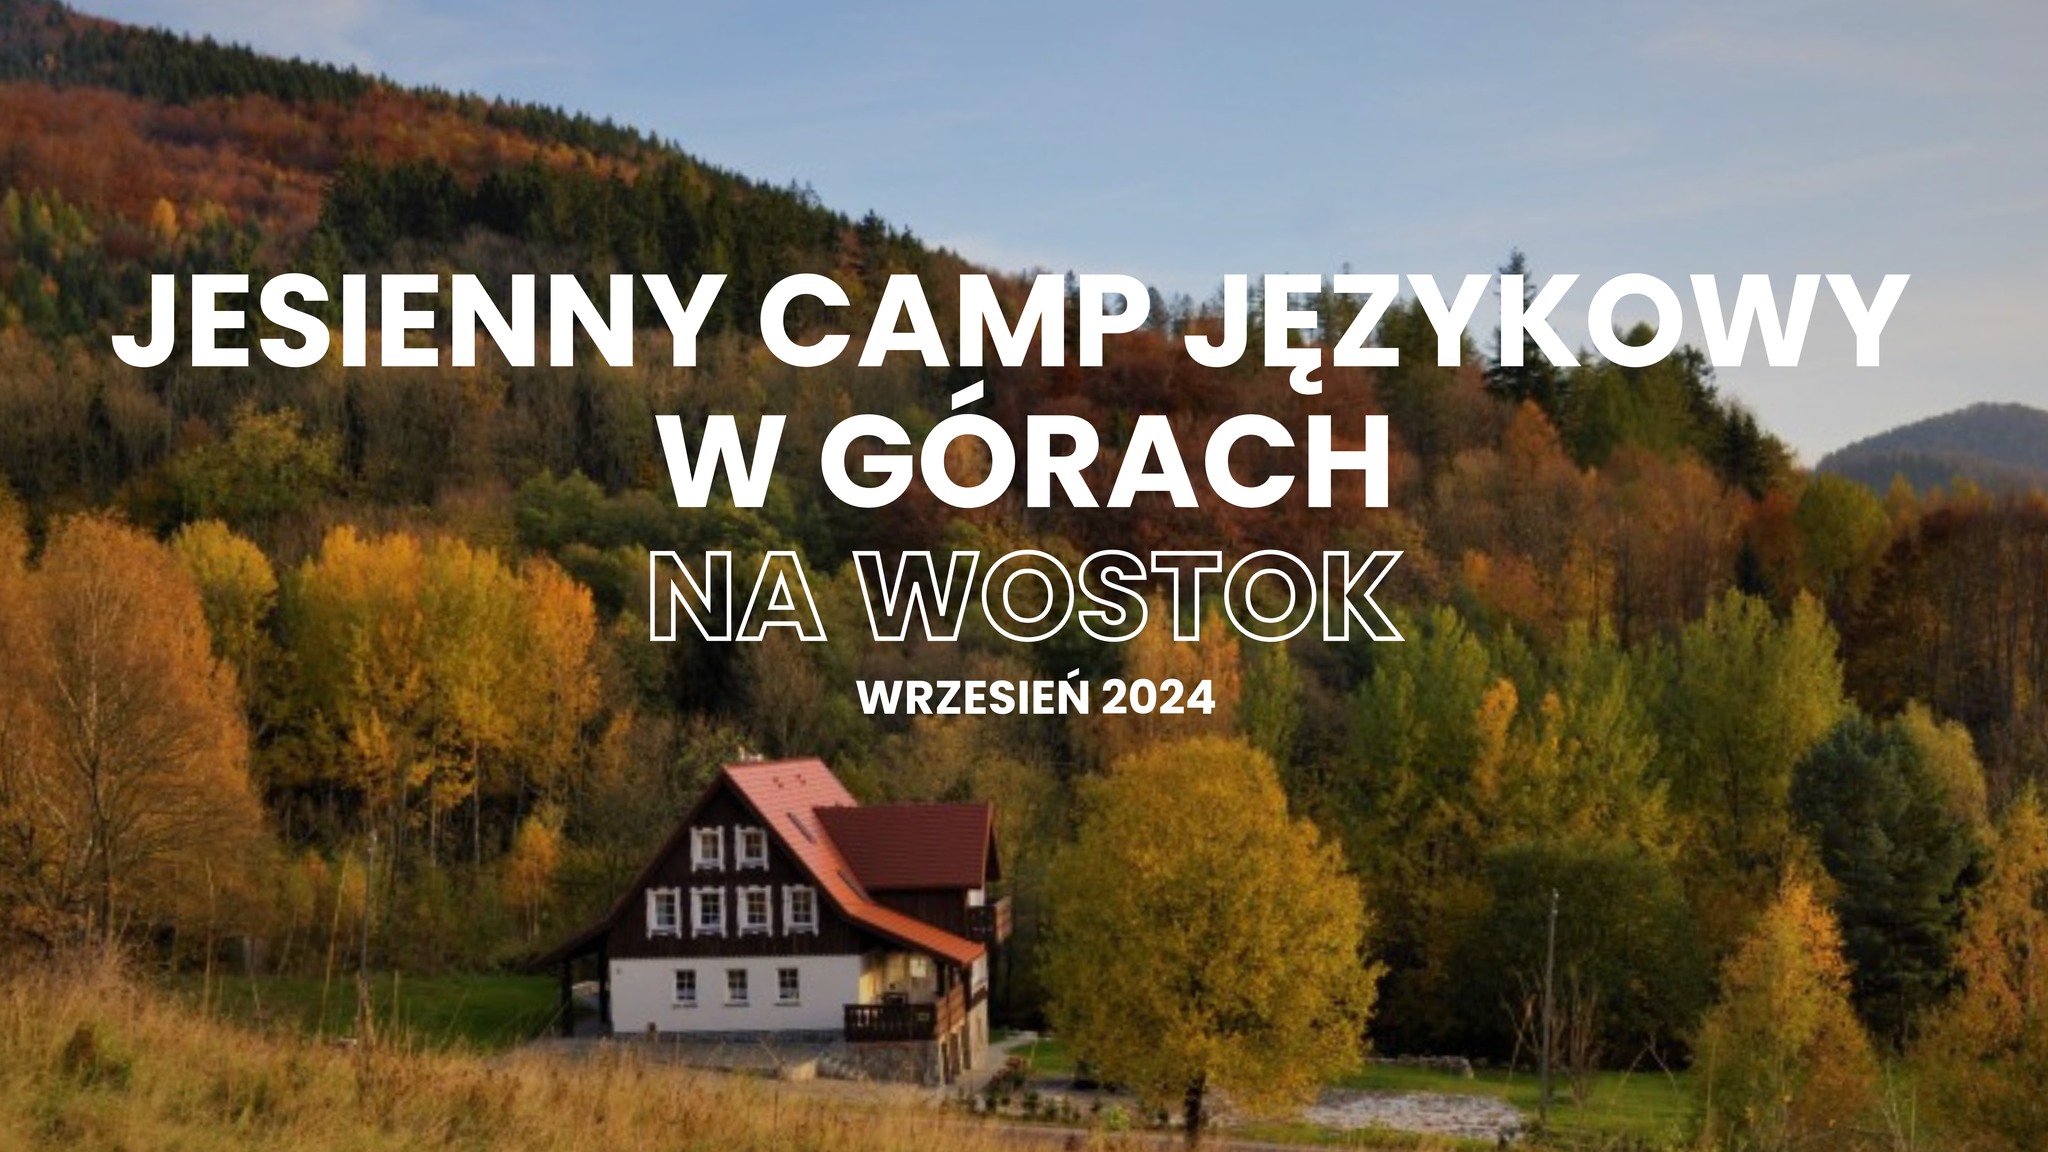 Jesienny camp językowy z NA WOSTOK w Kotlinie Kłodzkiej